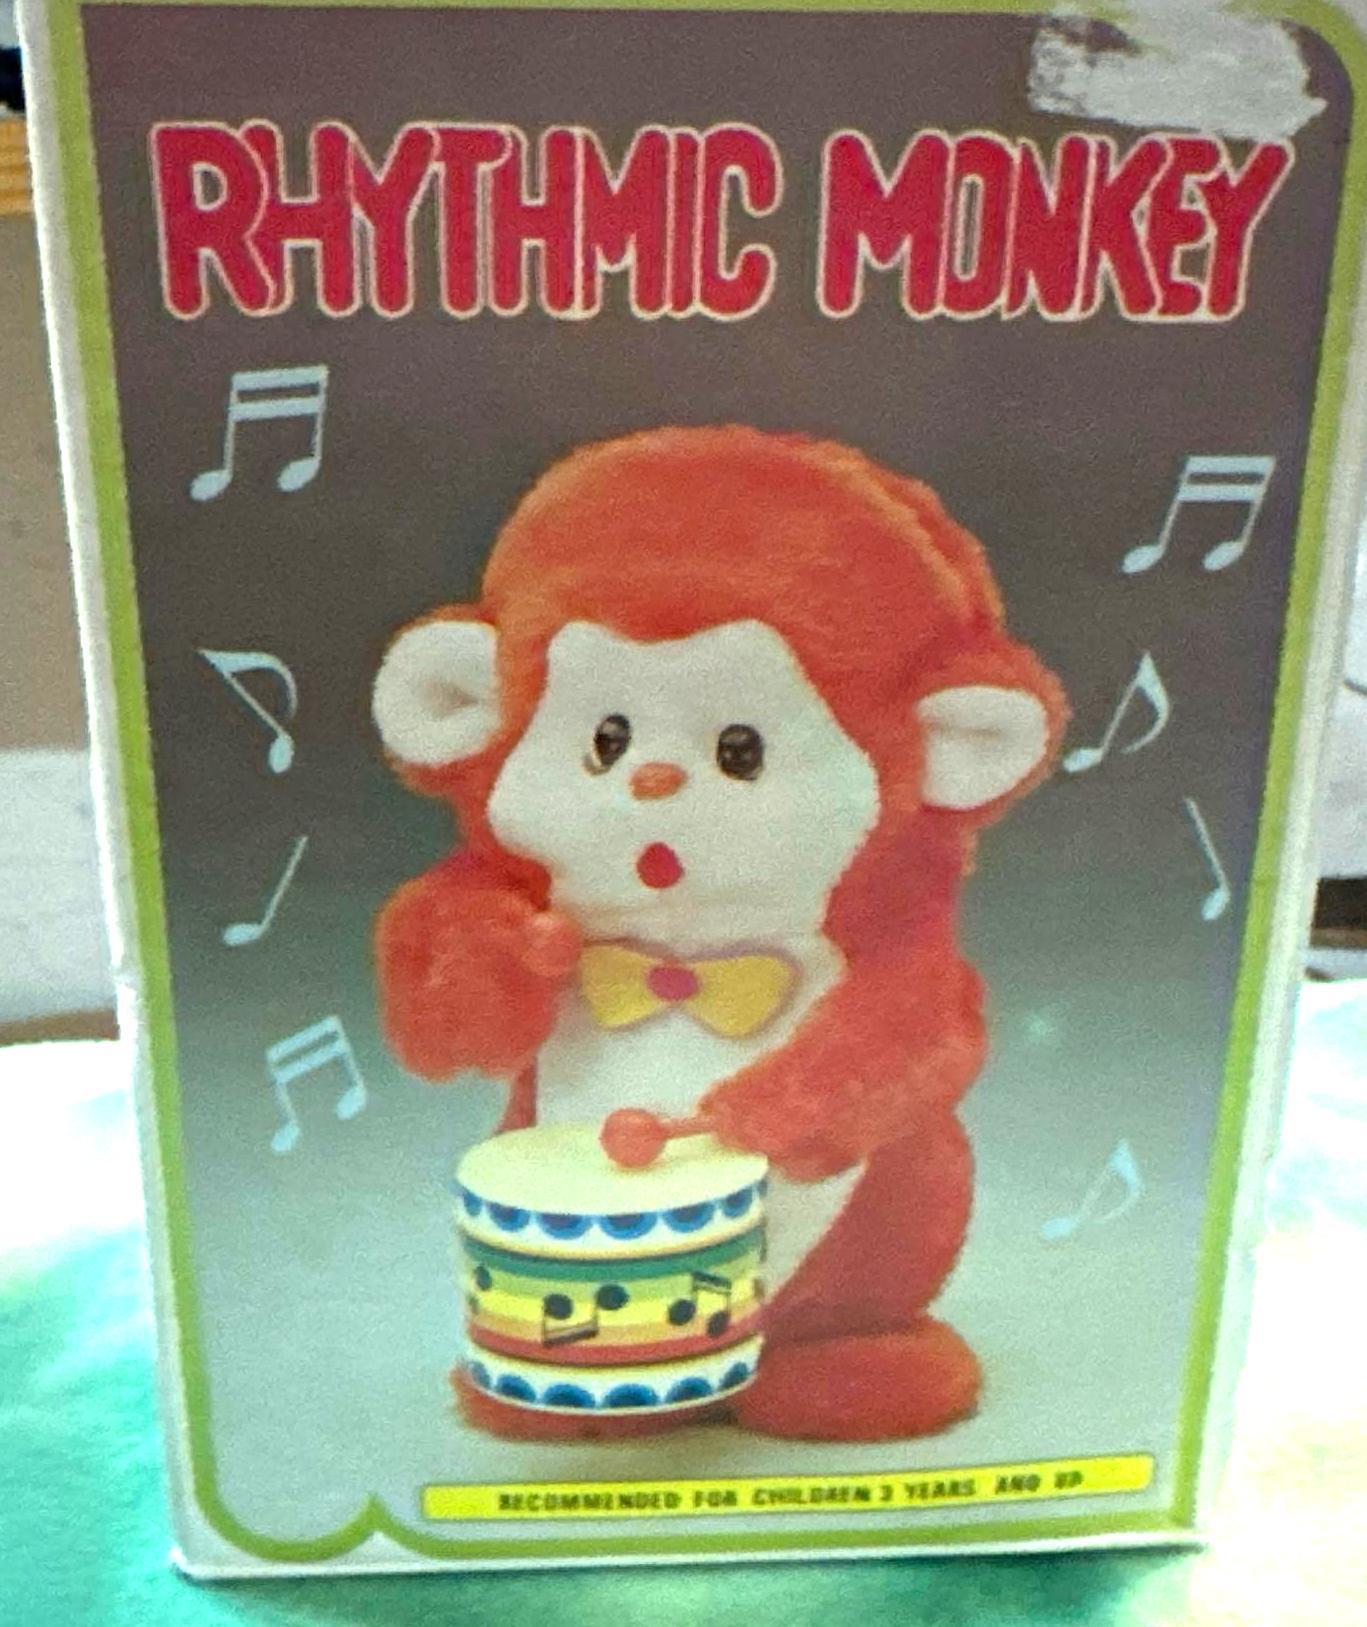 1960's Rhythmic monkey Toy in box